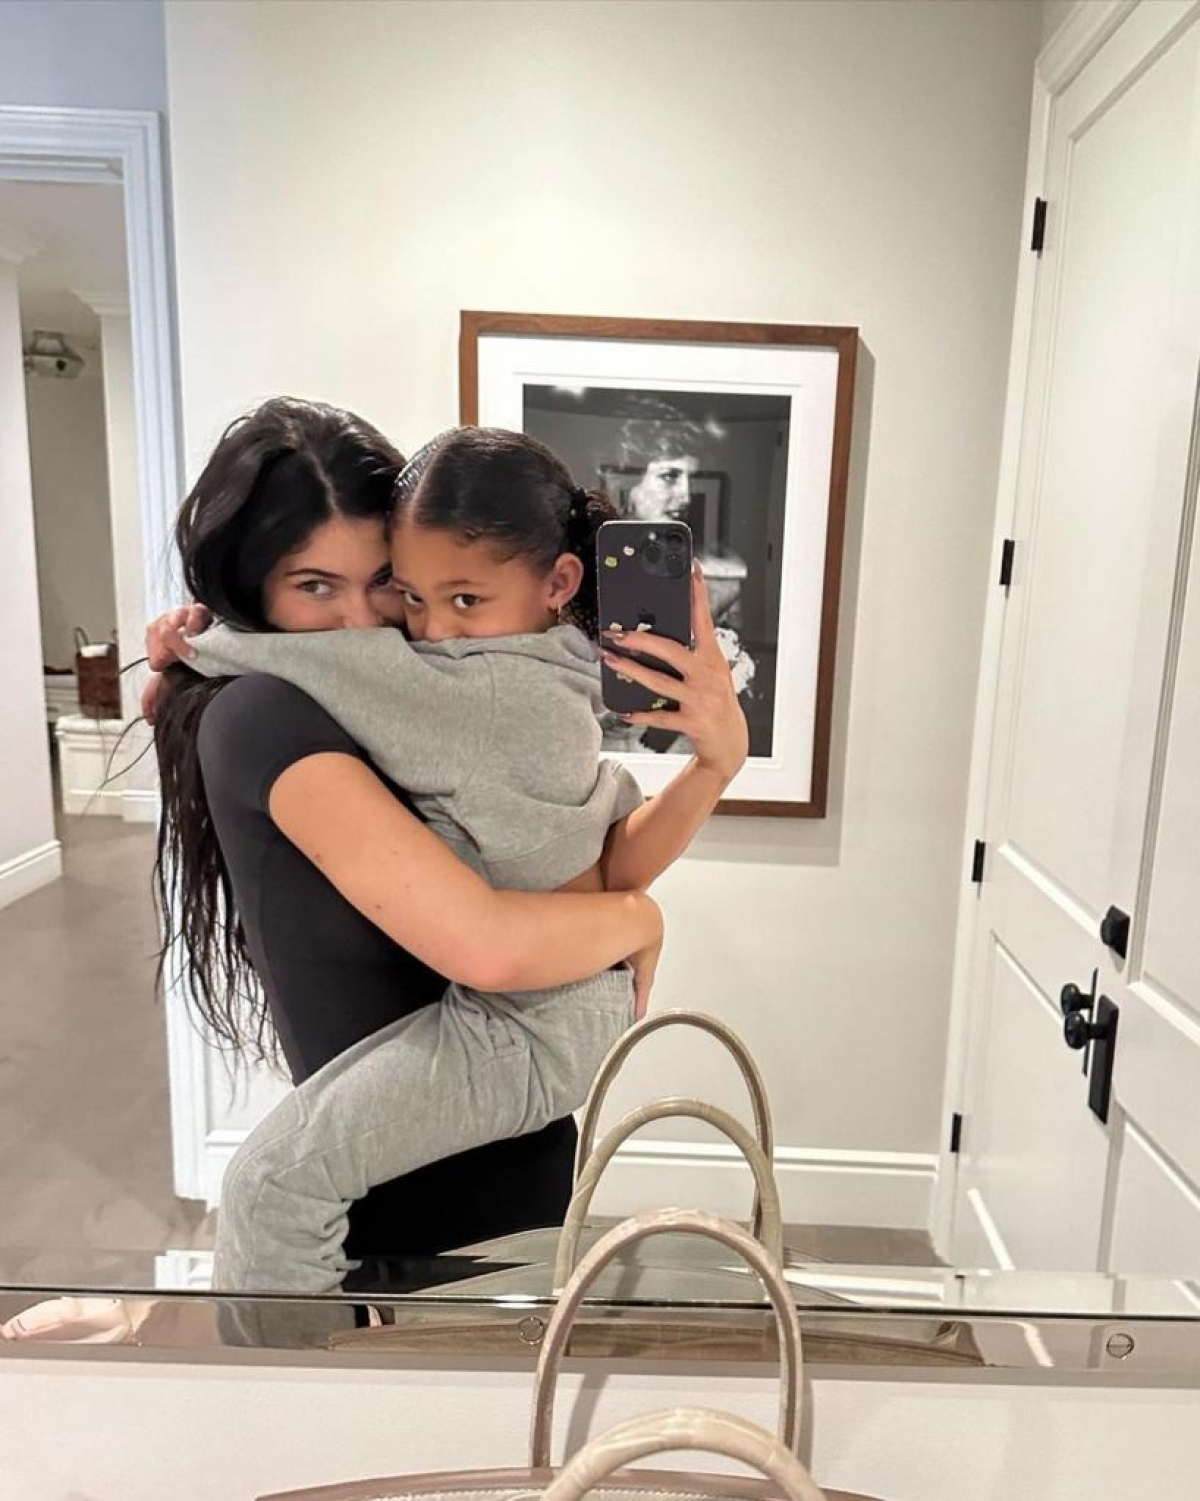 Con gái 5 tuổi của Kylie Jenner đeo đồng hồ Rolex gần 1 tỷ đồng - Ảnh 2.